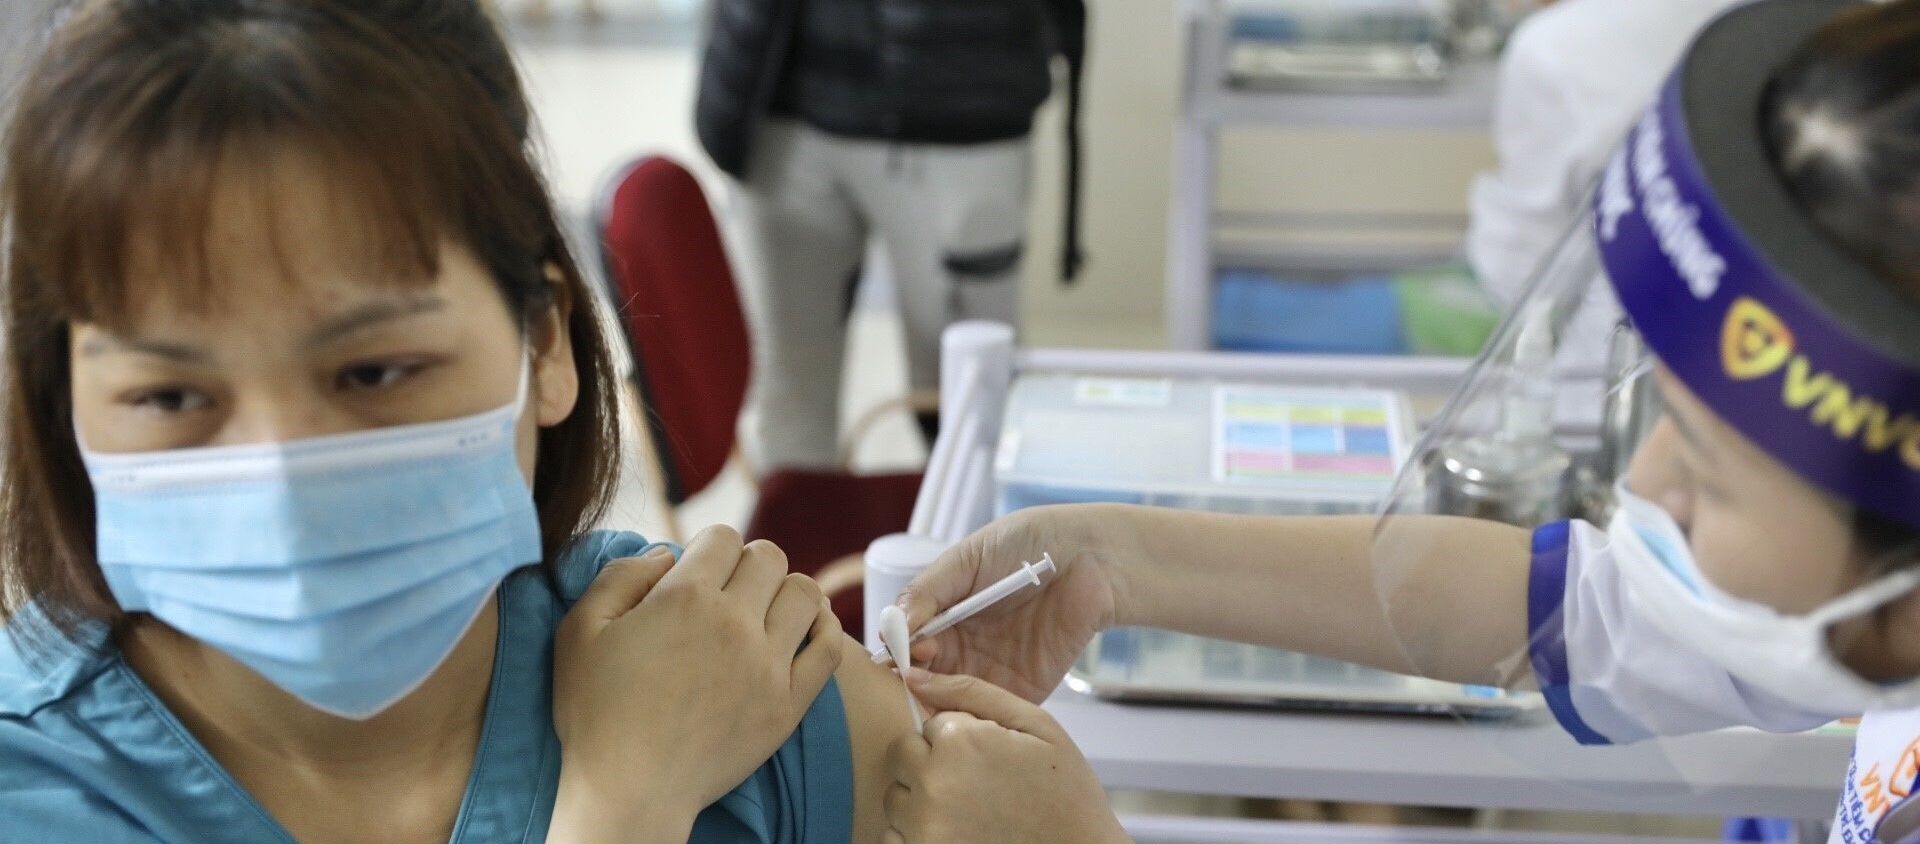 Nhân viên y tế tham gia trực tiếp công tác phòng chống dịch COVID-19 tại Bệnh viện Thanh Nhàn được tiêm vaccine phòng COVID-19.  - Sputnik Việt Nam, 1920, 16.03.2021